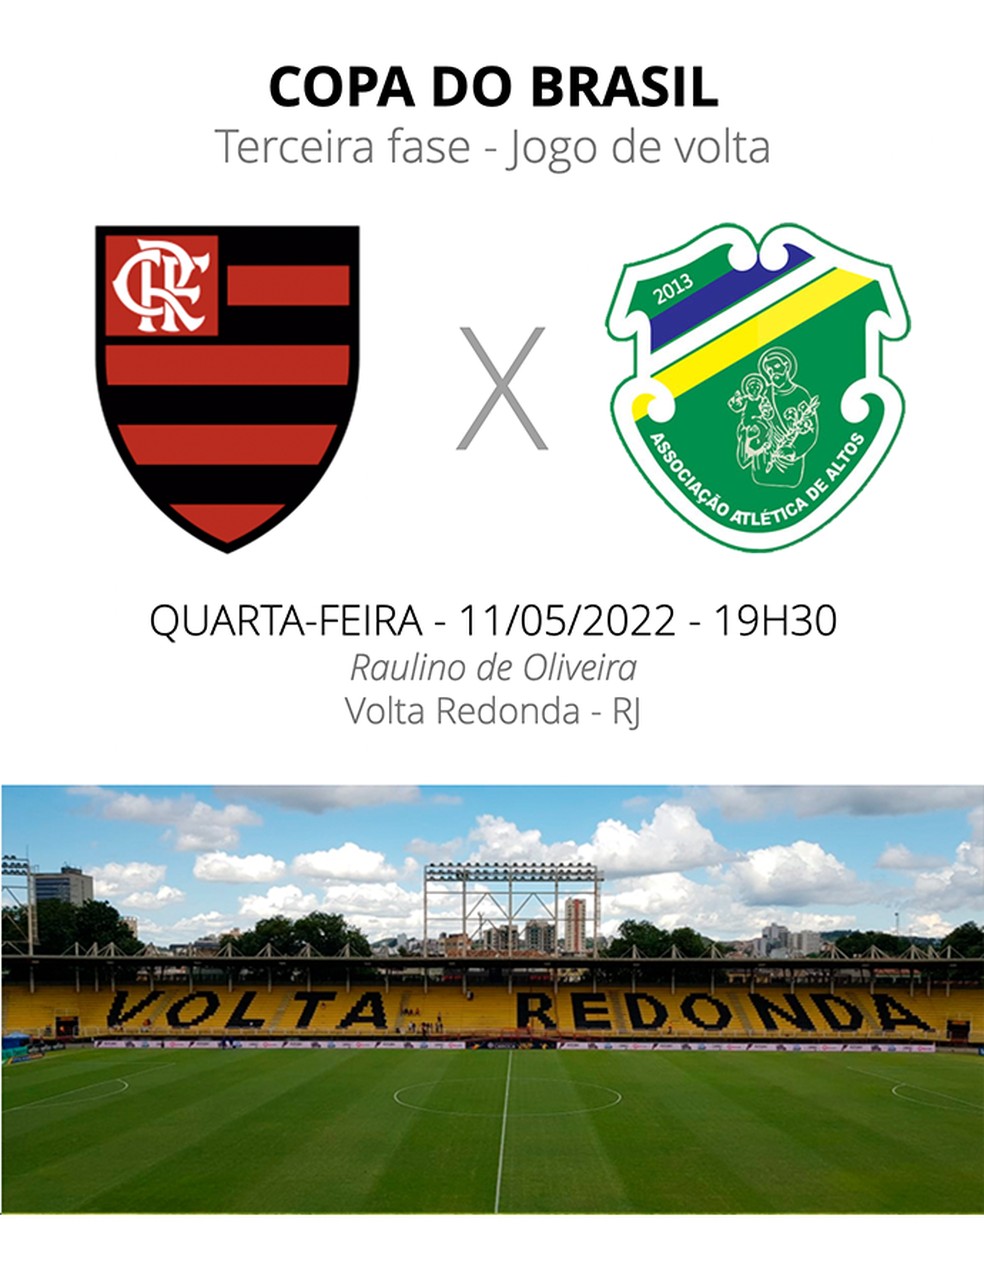 Copa Roblox 🏆 on X: O Flamengo vira o jogo e consegue levar pros